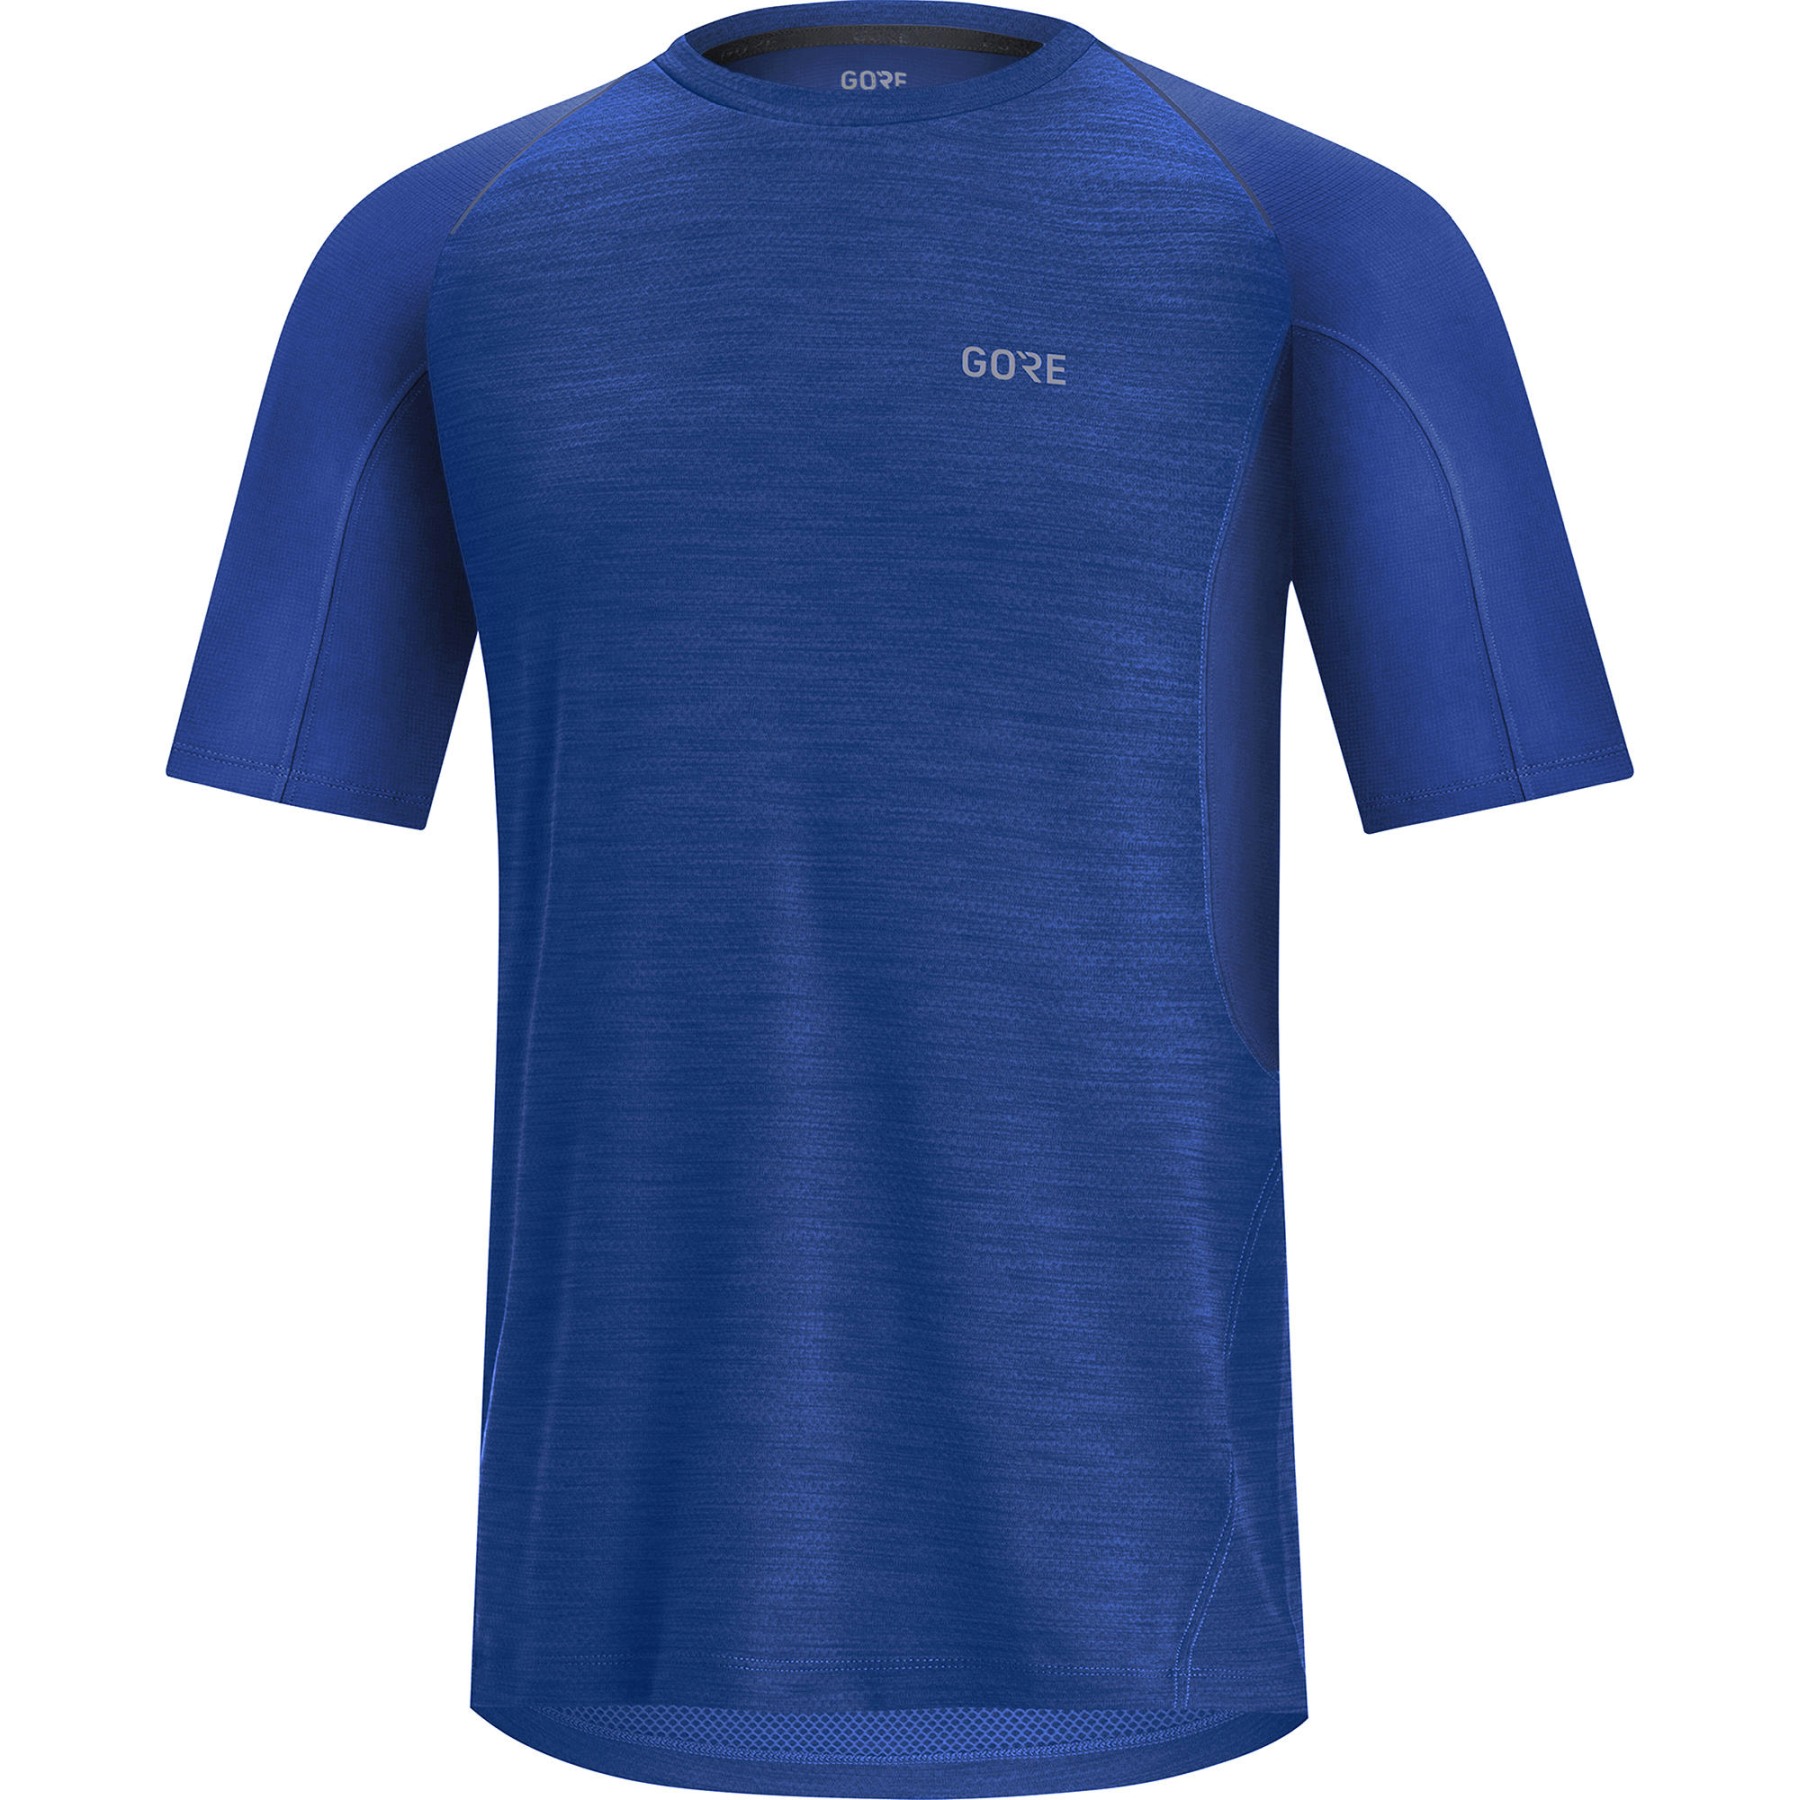 Bild von GOREWEAR R5 T-Shirt Herren - ultramarine blue BL00